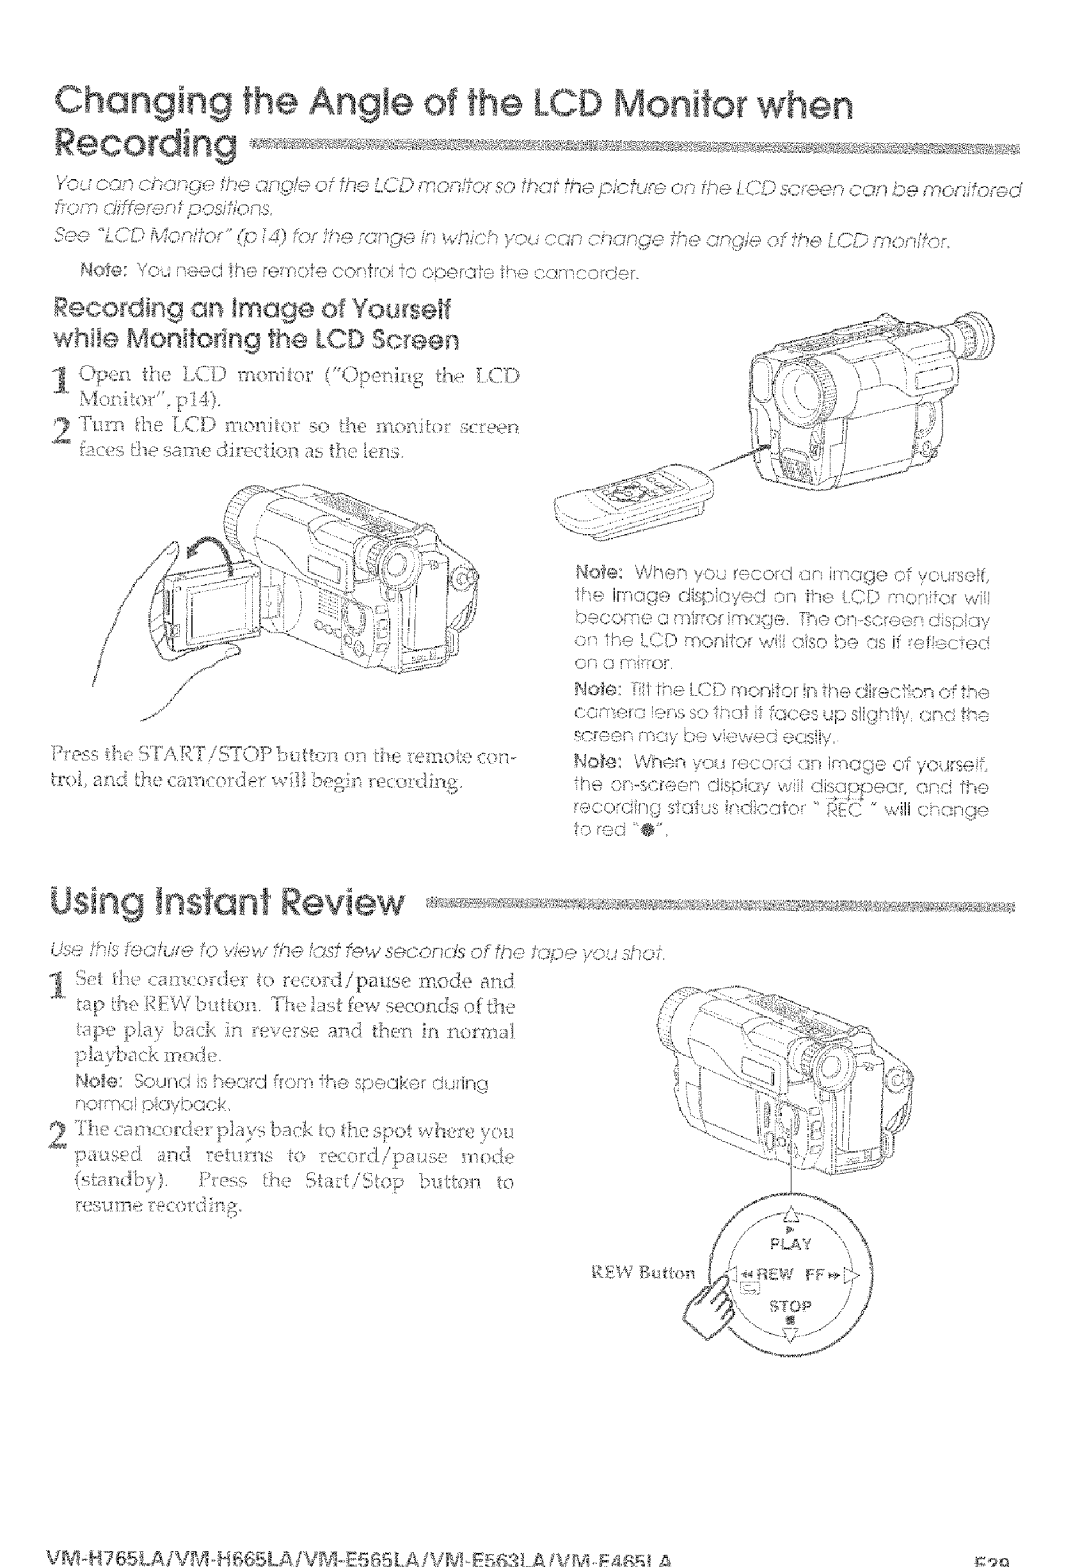 Hitachi VM-E565LA, VM-E465LA manual Using Instant Review, Ess q,/d,iL,TOPm.to i eno e 